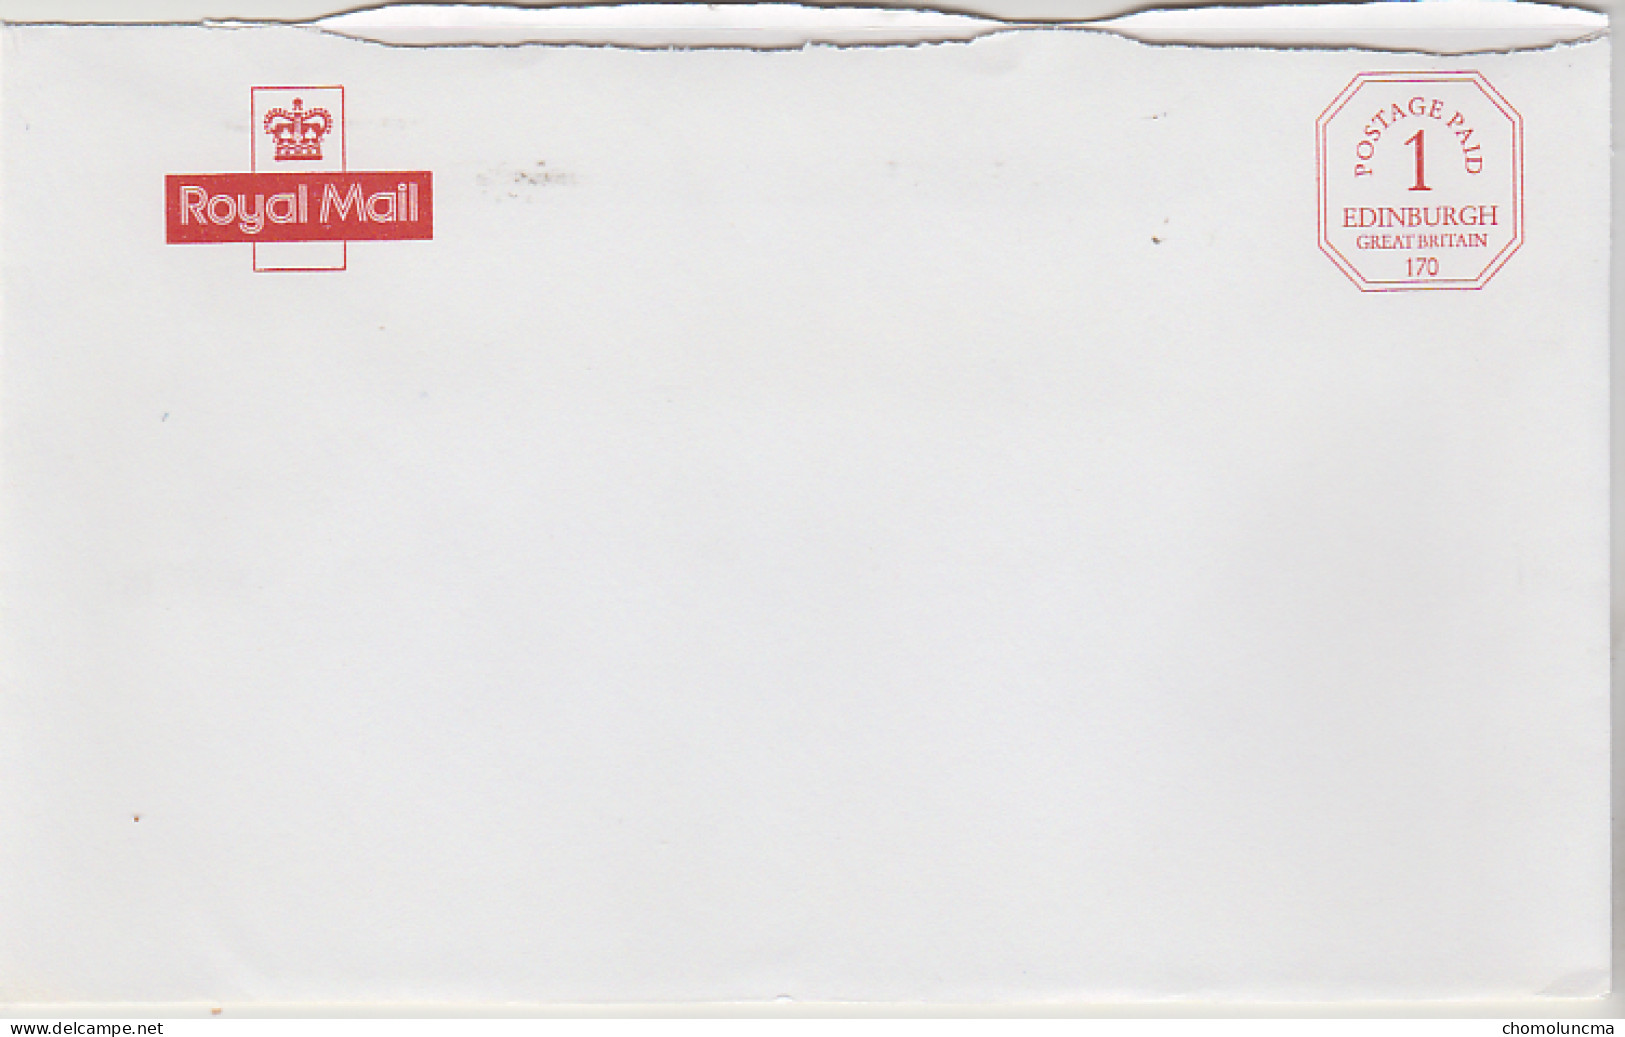 Royal Mail Cancel Postage Paid Edinburgh Printed In Red Port Payé Du Service Philatélique De Grande Bretagne - Servizio